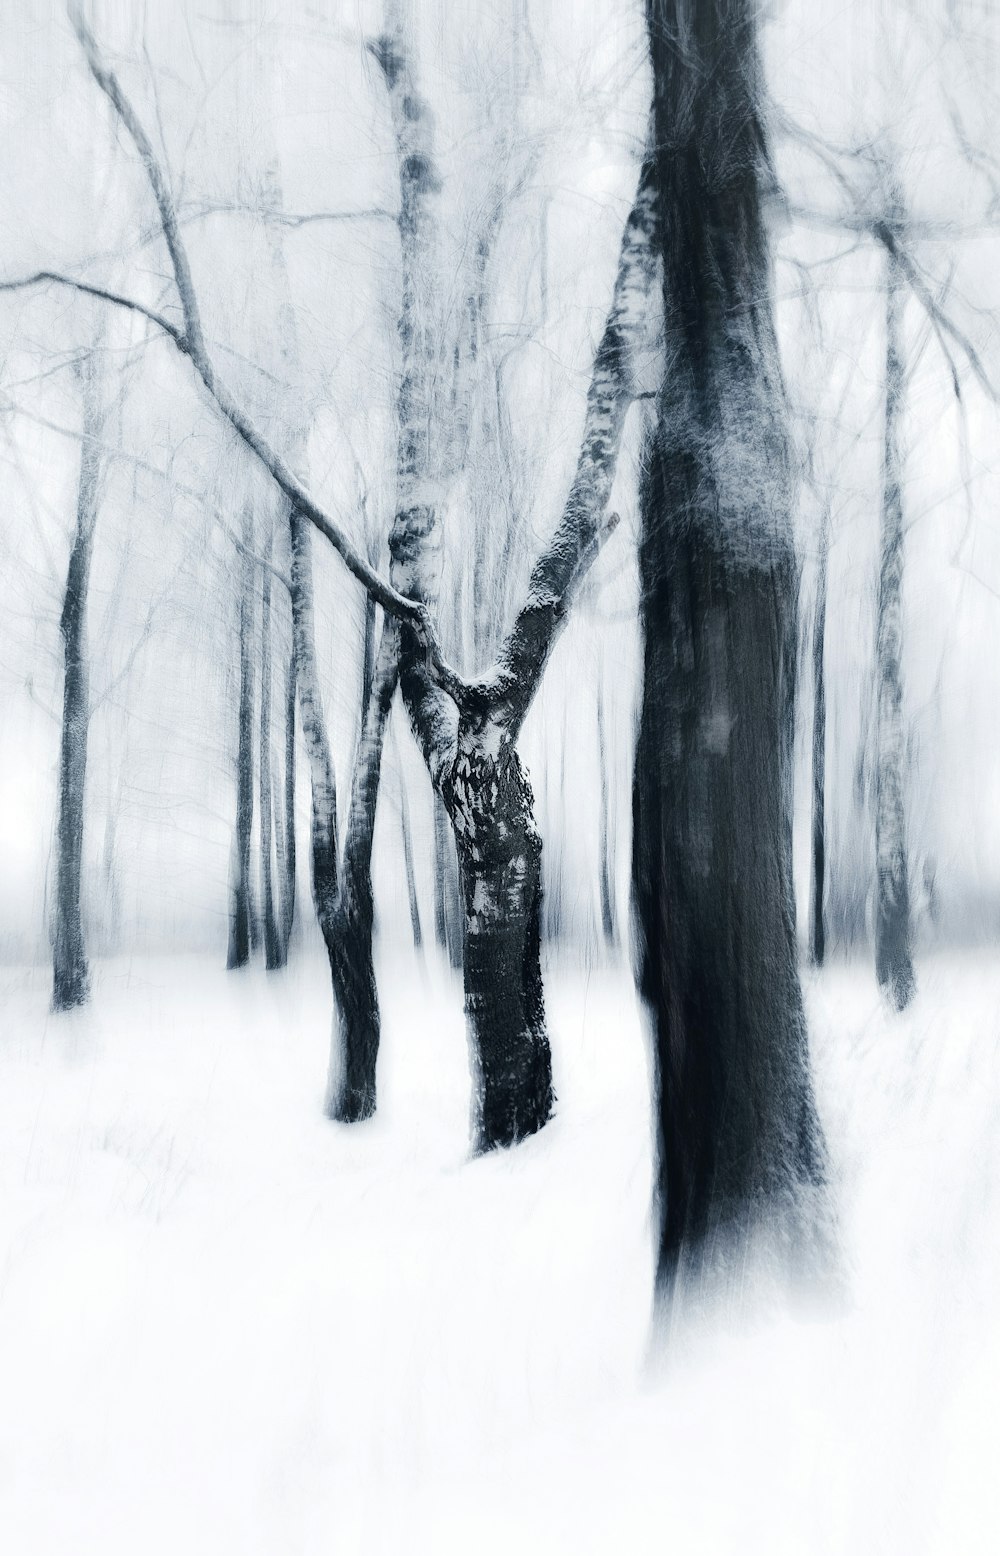 Una foto en blanco y negro de árboles en la nieve